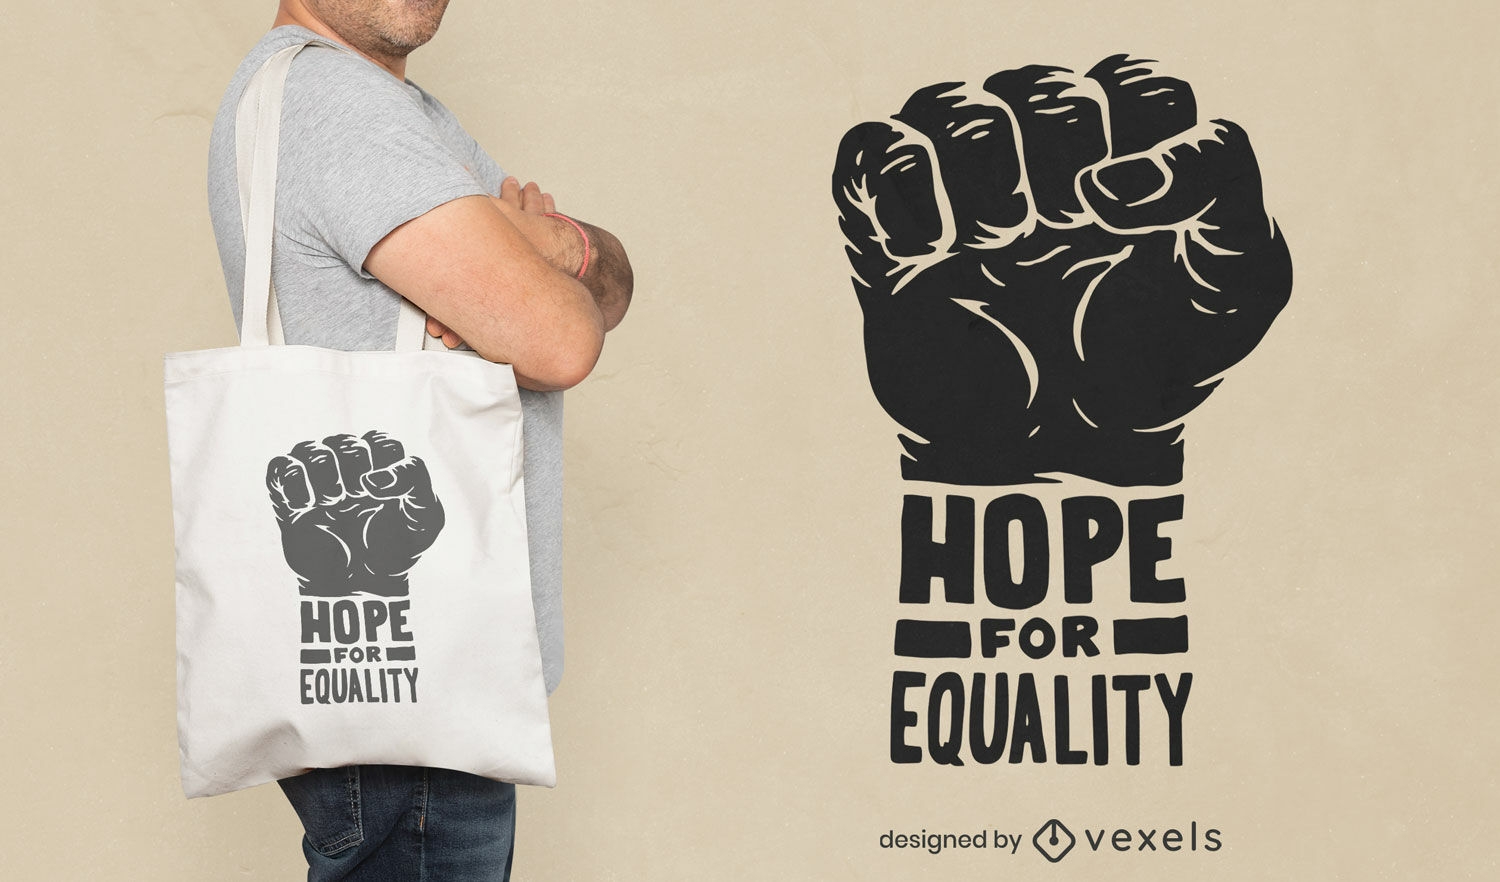 Diseño de bolsa de asas de esperanza para la igualdad.